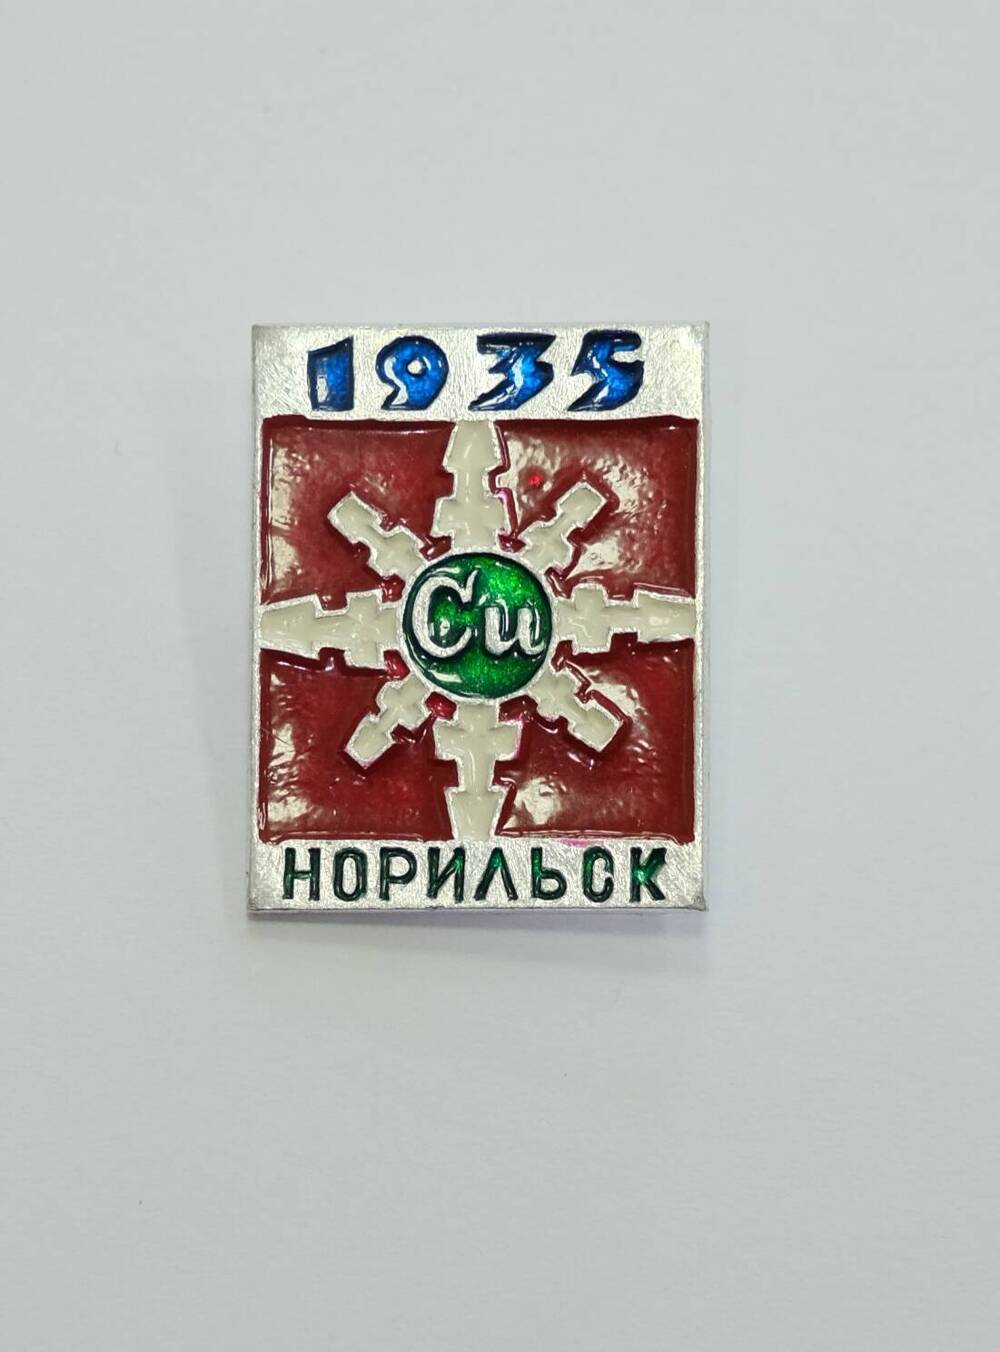 Значок СССР квадратной формы  1935 НОРИЛЬСК. На фоне красной эмали беля 8-и угольная снежинка в центре знакэлемента меди Сu.